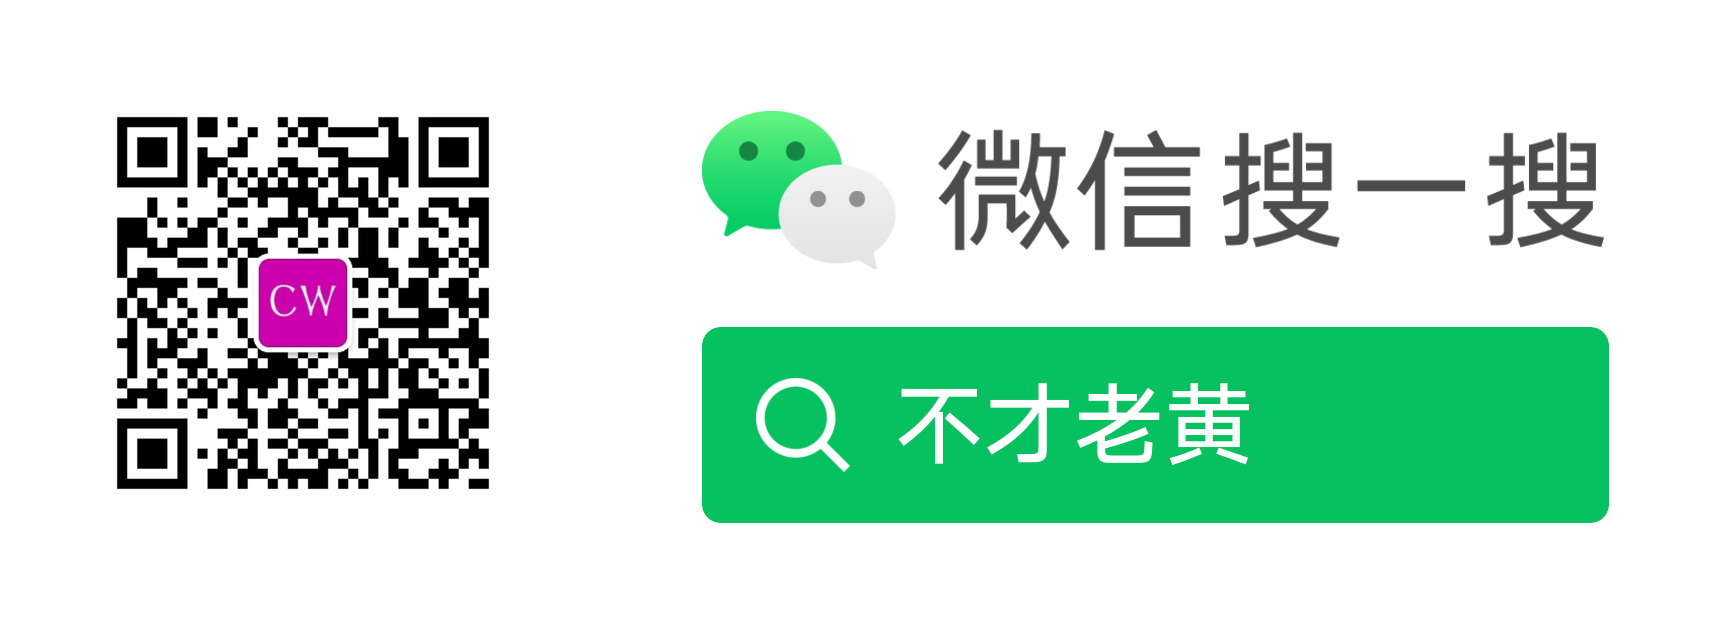 Включи на китайском 1 2 3. 微光app.